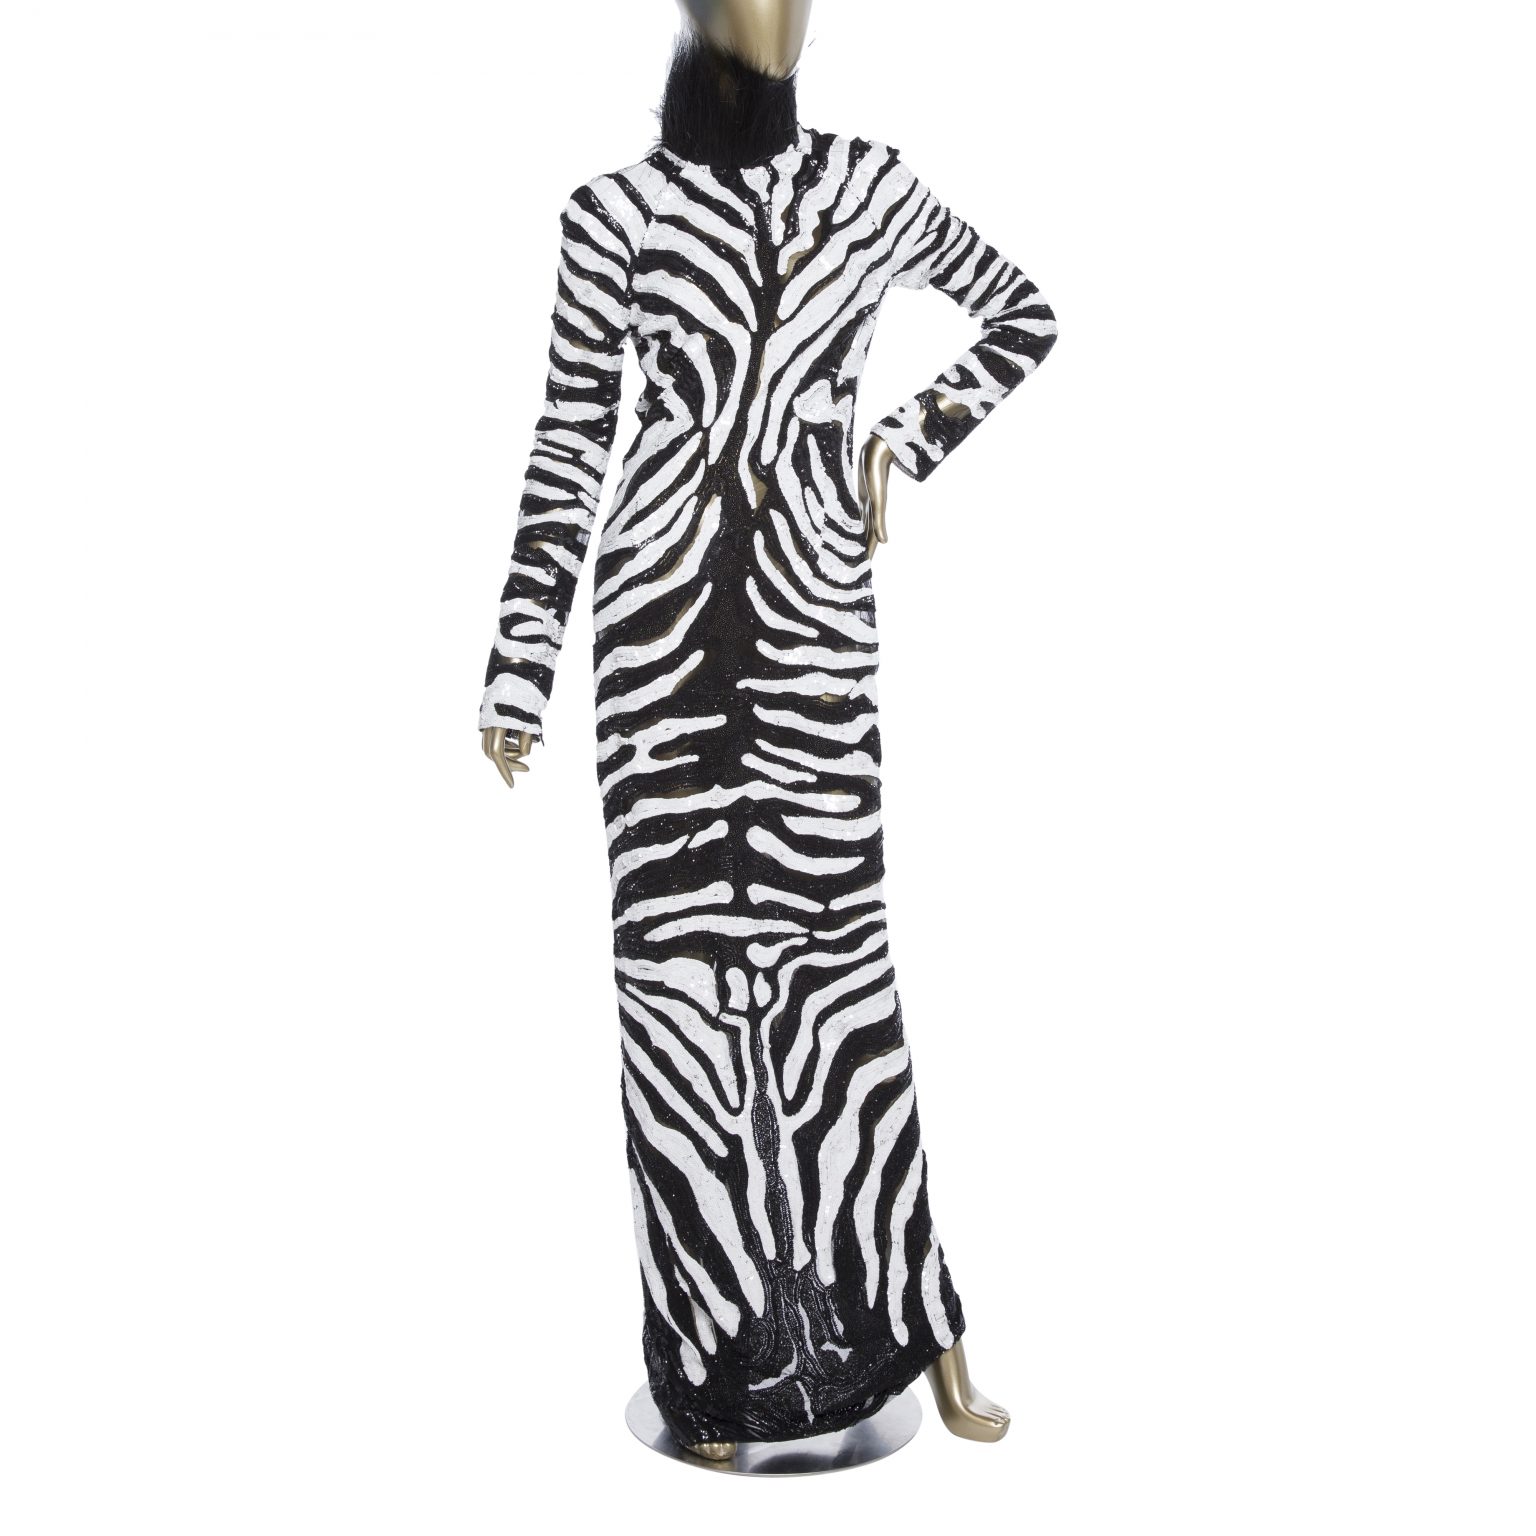 Tom Ford Zebra Dress - Janet Mandell